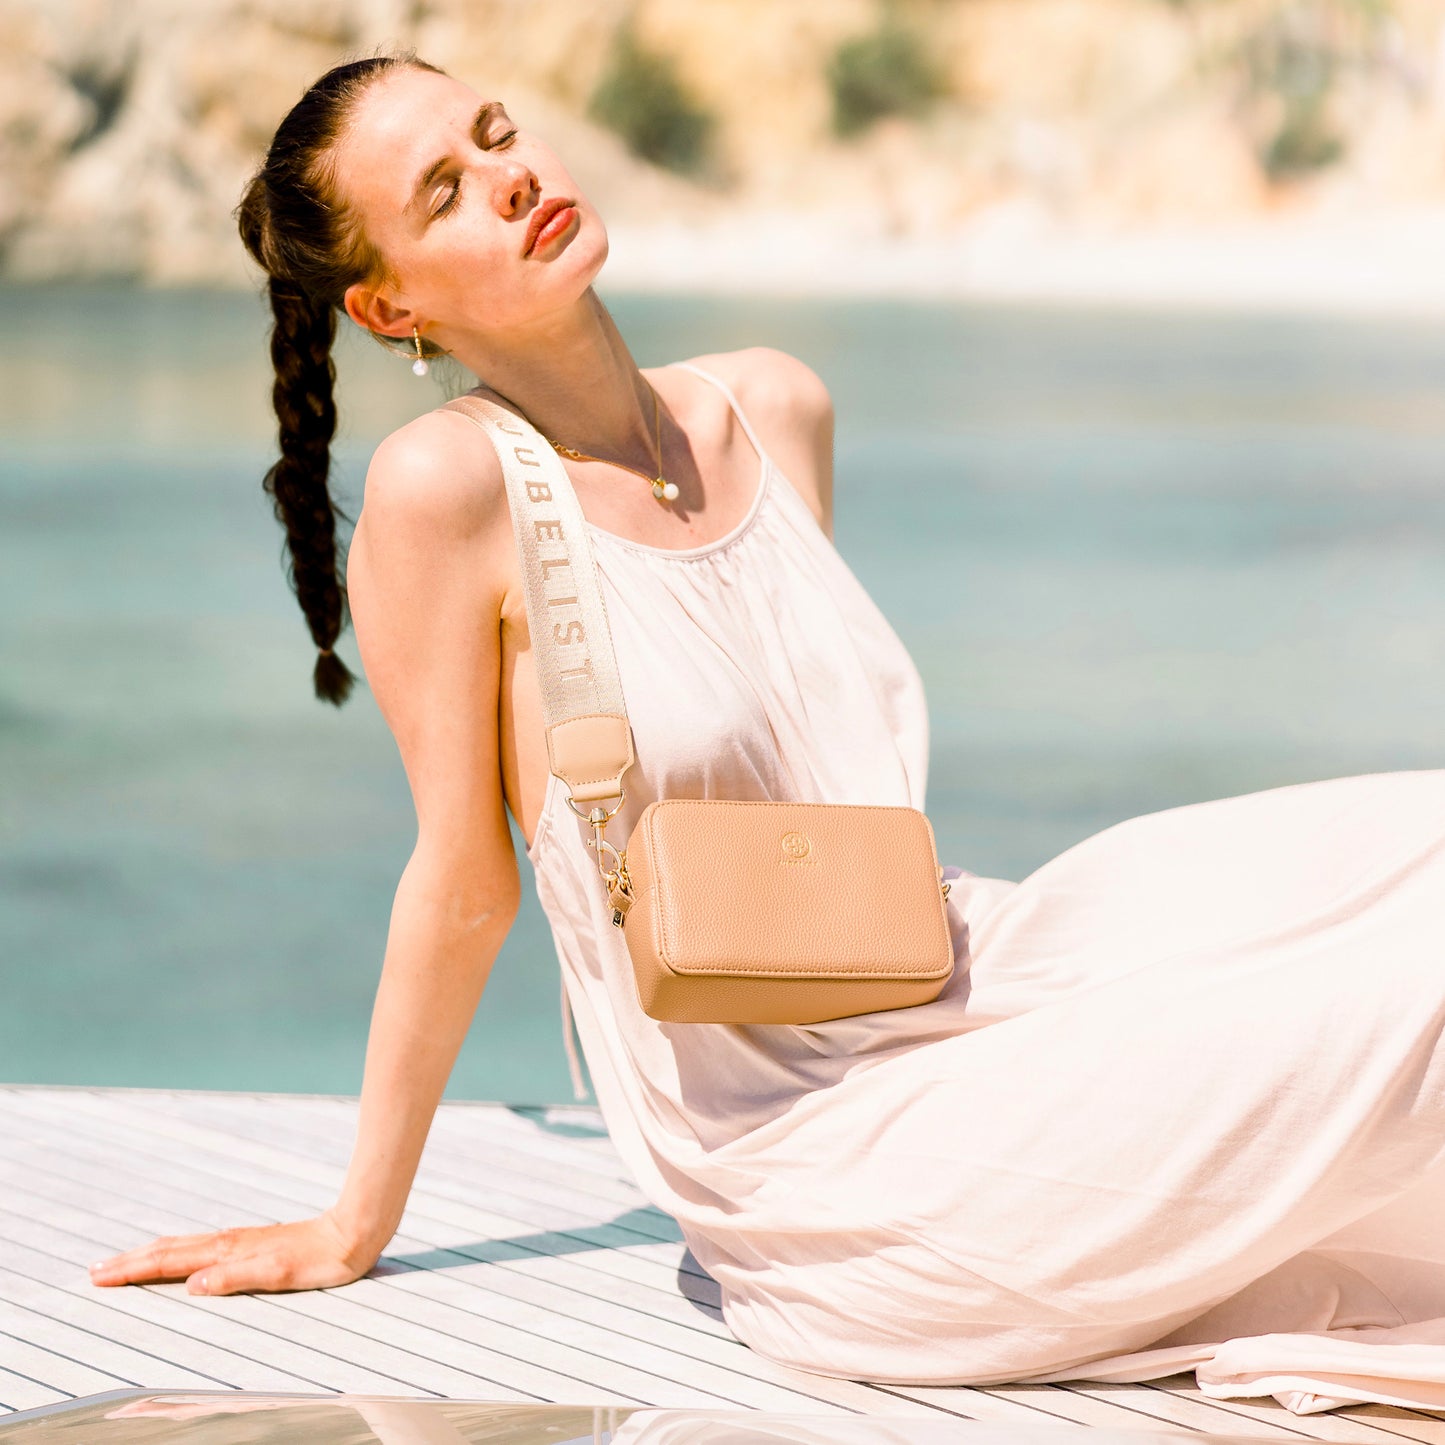 Frau sitzt mit einem simplen weißen Kleid vorm Hintergrund mit Meer, sie trägt den Signatur Strap an der Jade